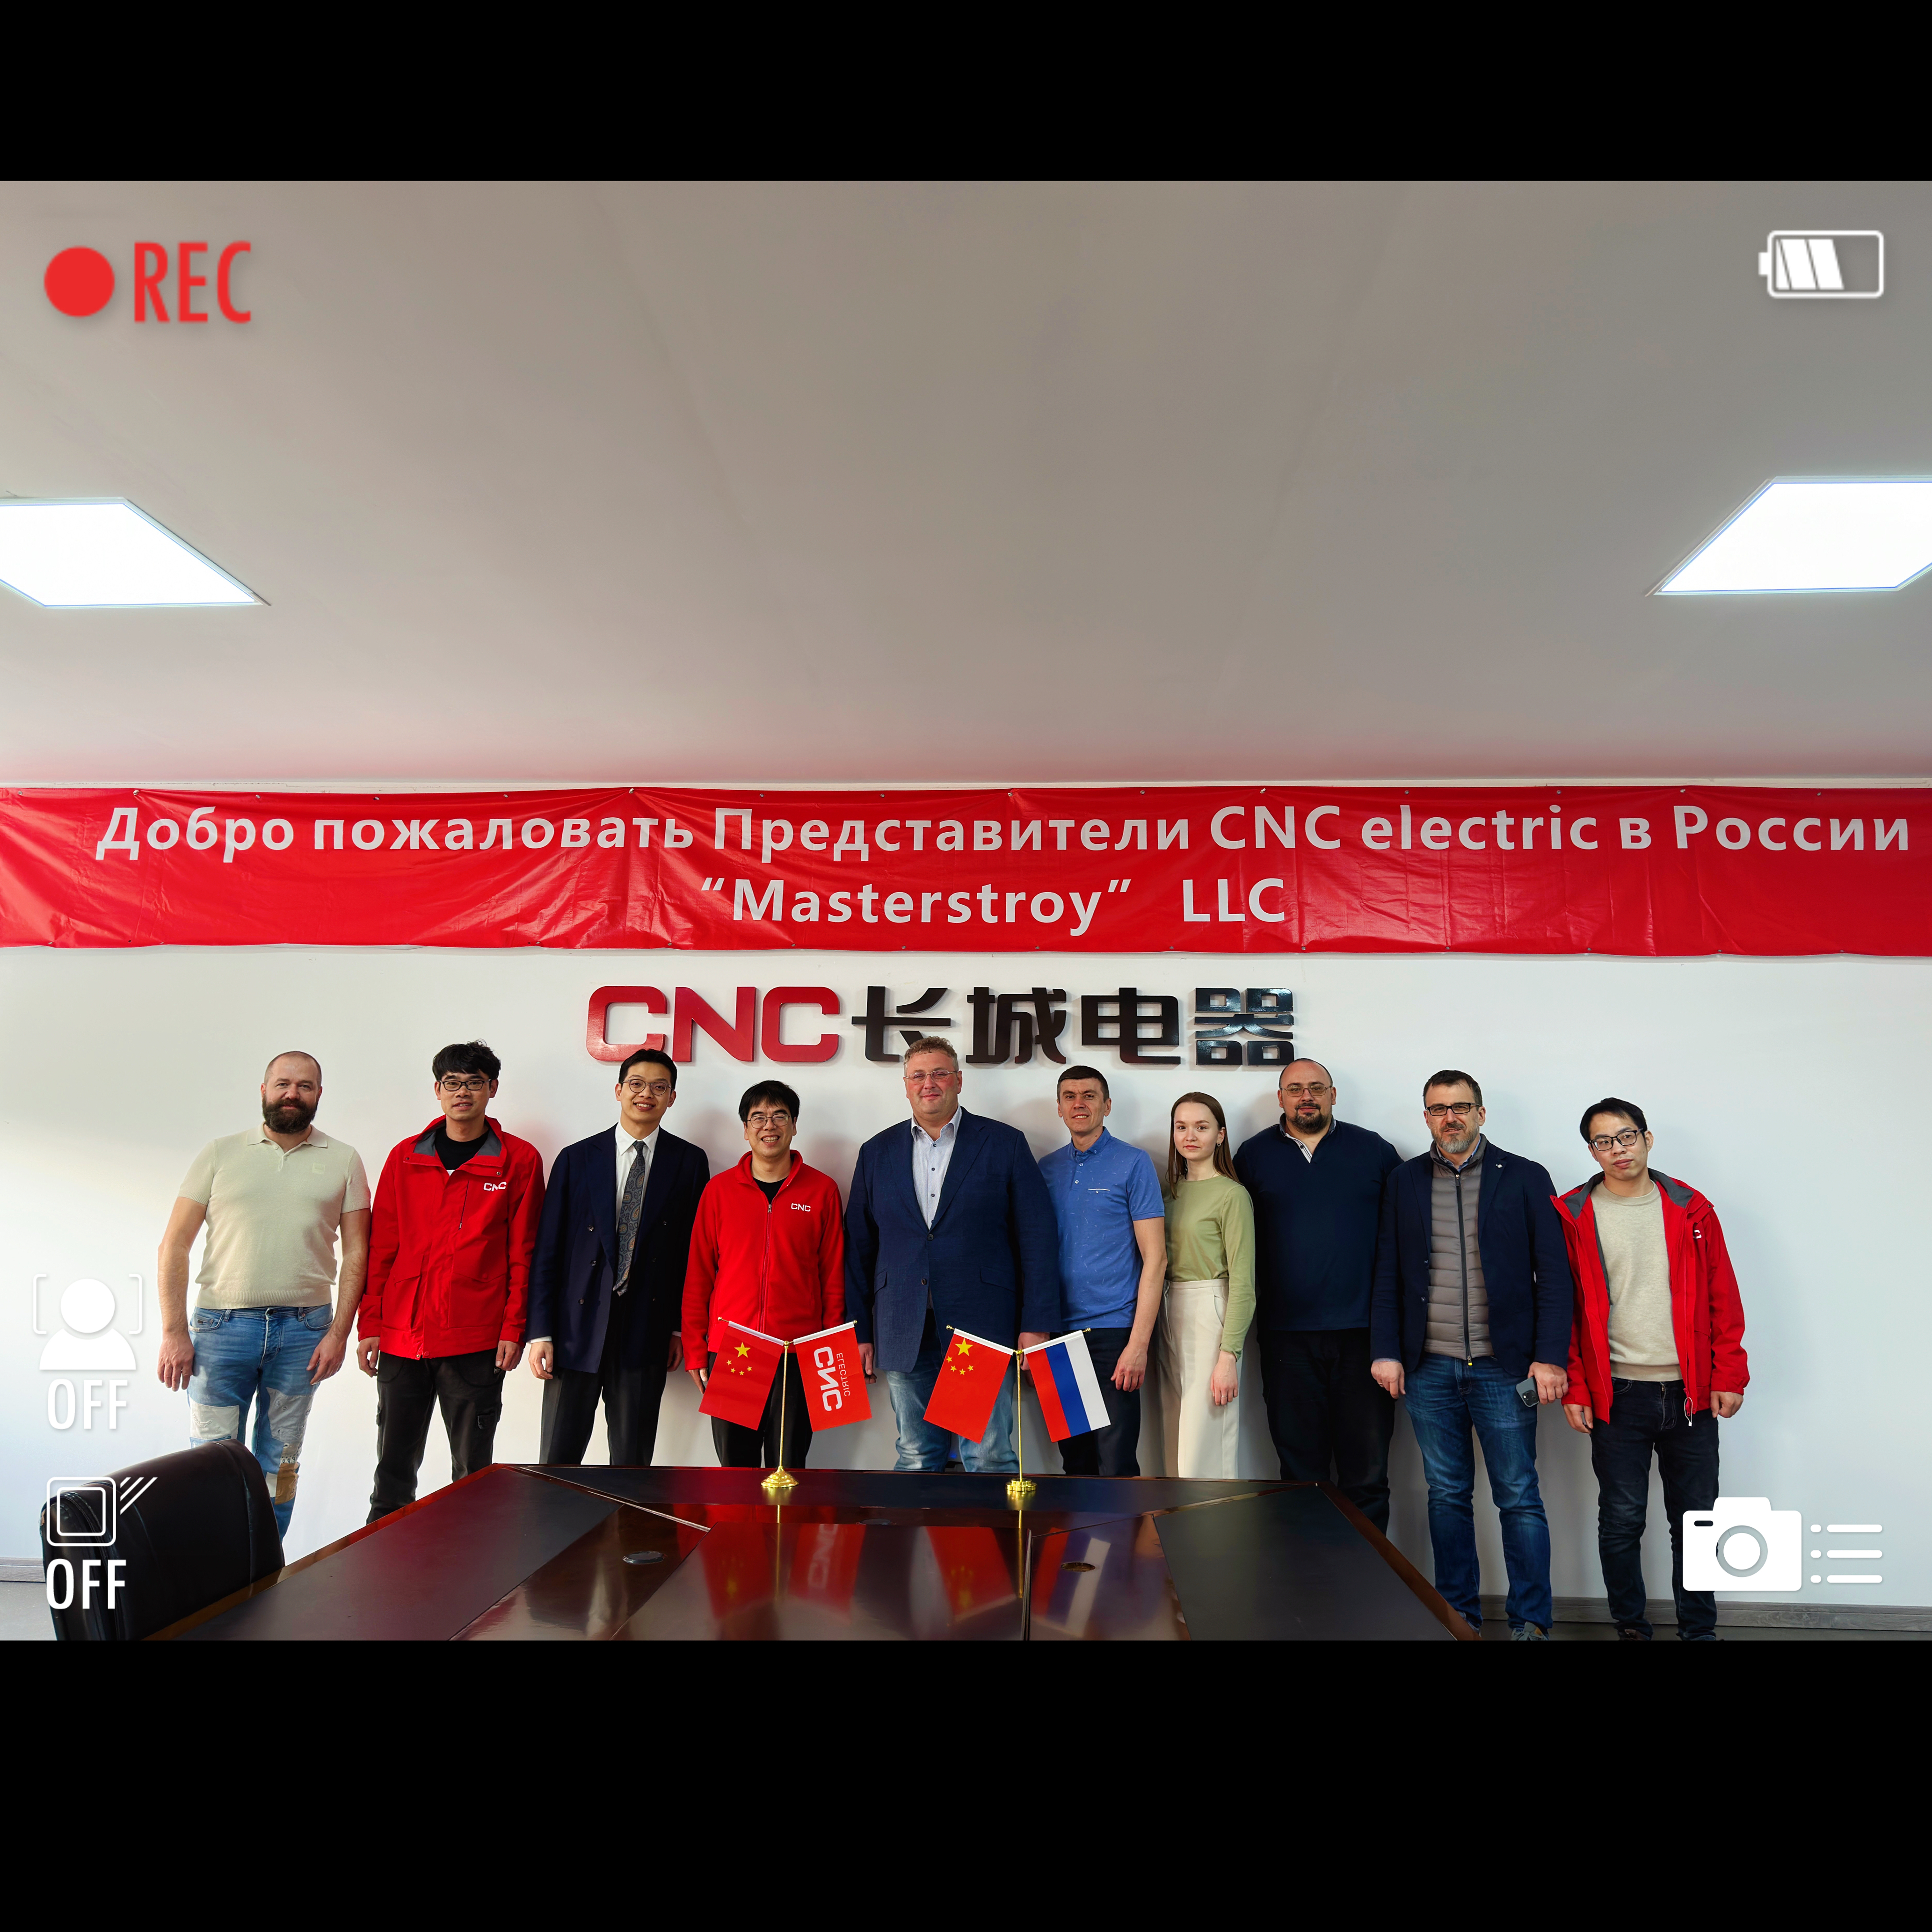 CNC | Добро пожаловать Представители CNC electric в России-“Masterstroy” LLC